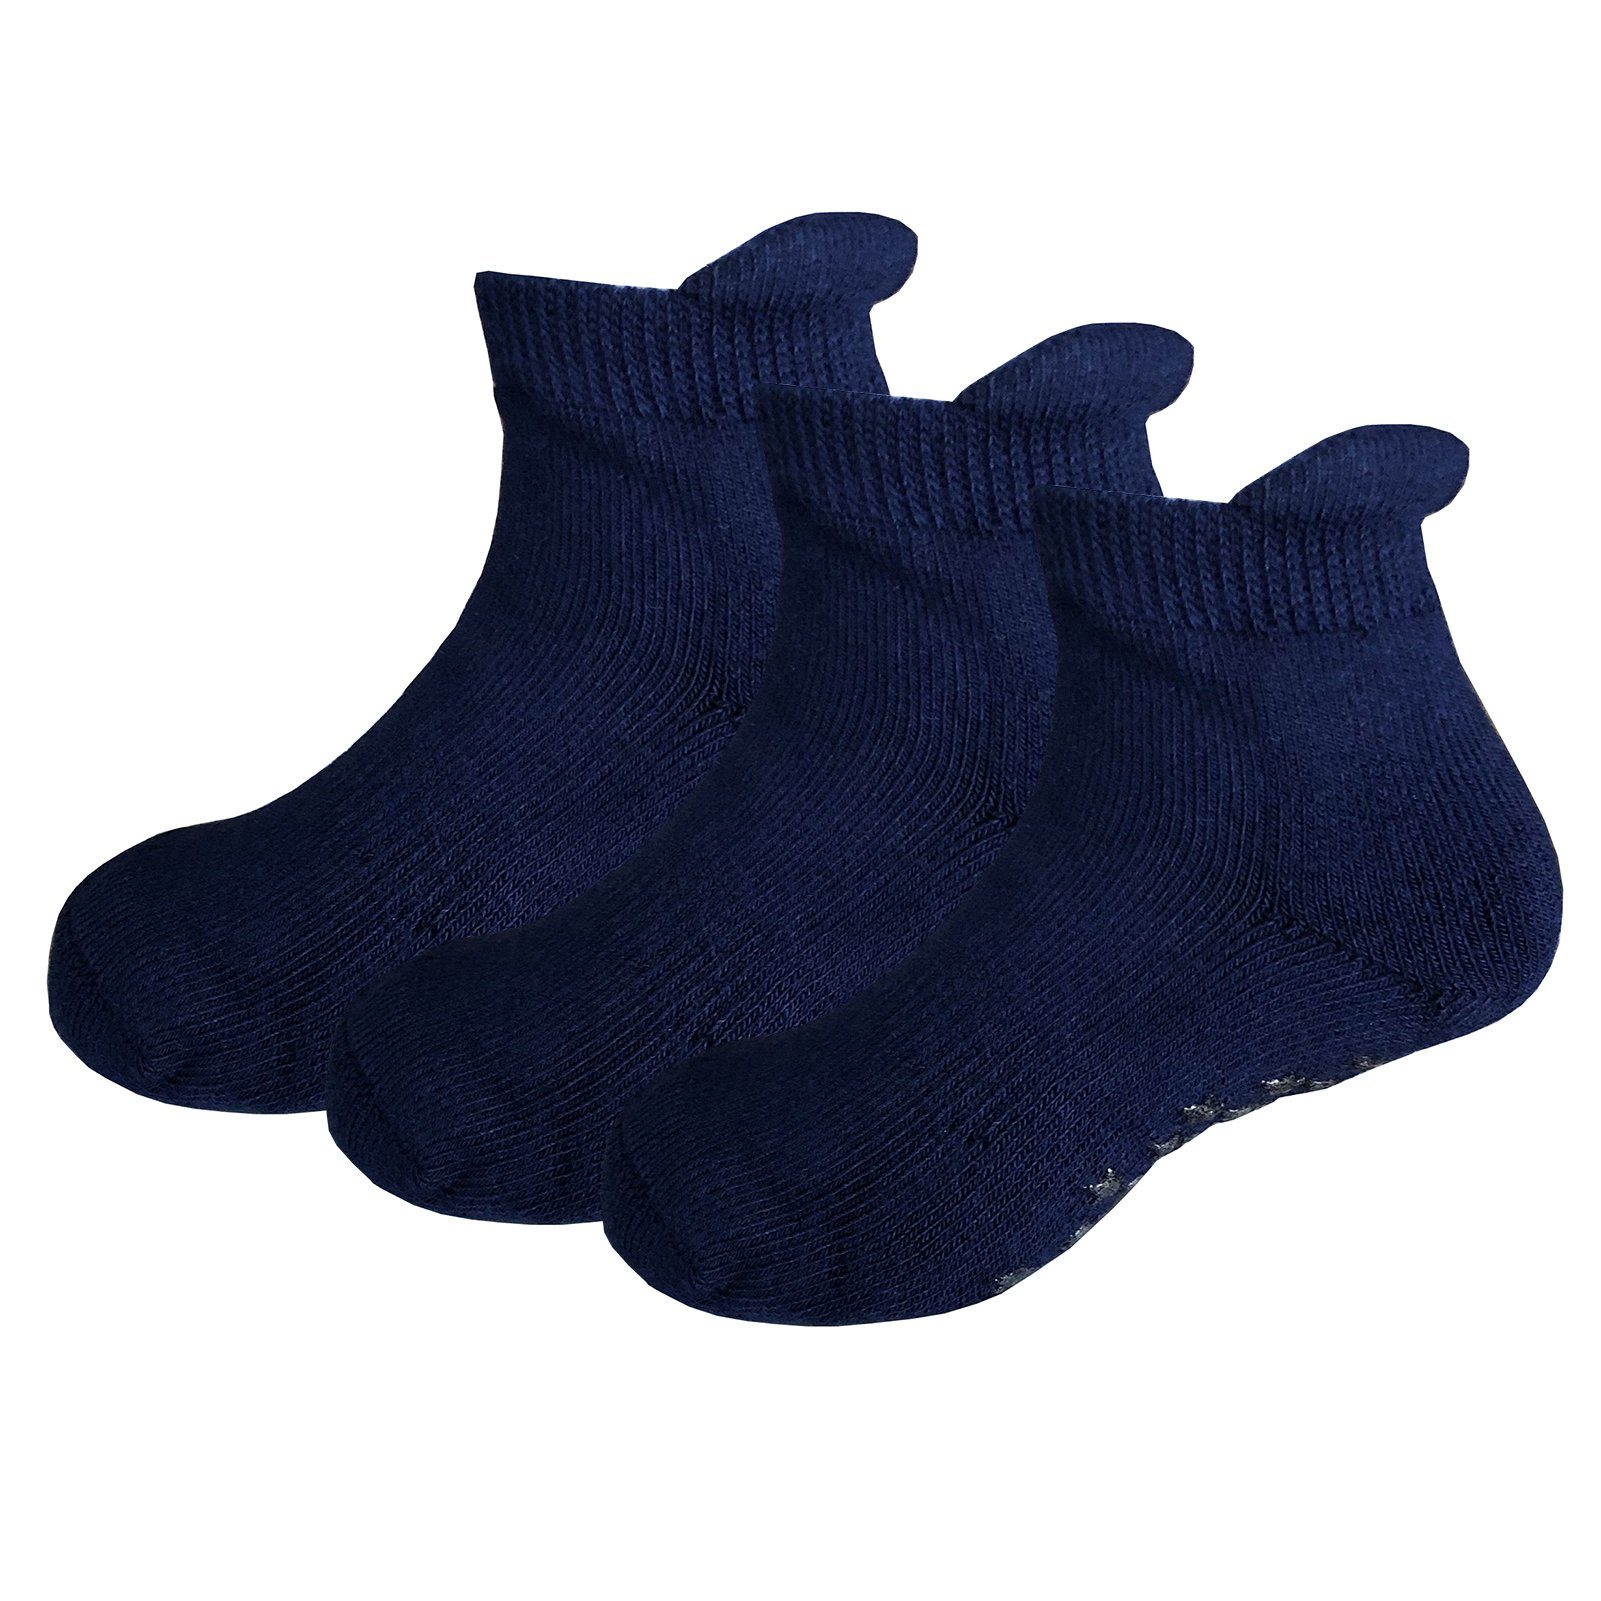 Yalion Arbeitssocken Babysocken (3-Paar) Anti-Rutsch-Socken Weiche Kinder Baumwoll Socke Atmungsaktiv und warm Navy blau